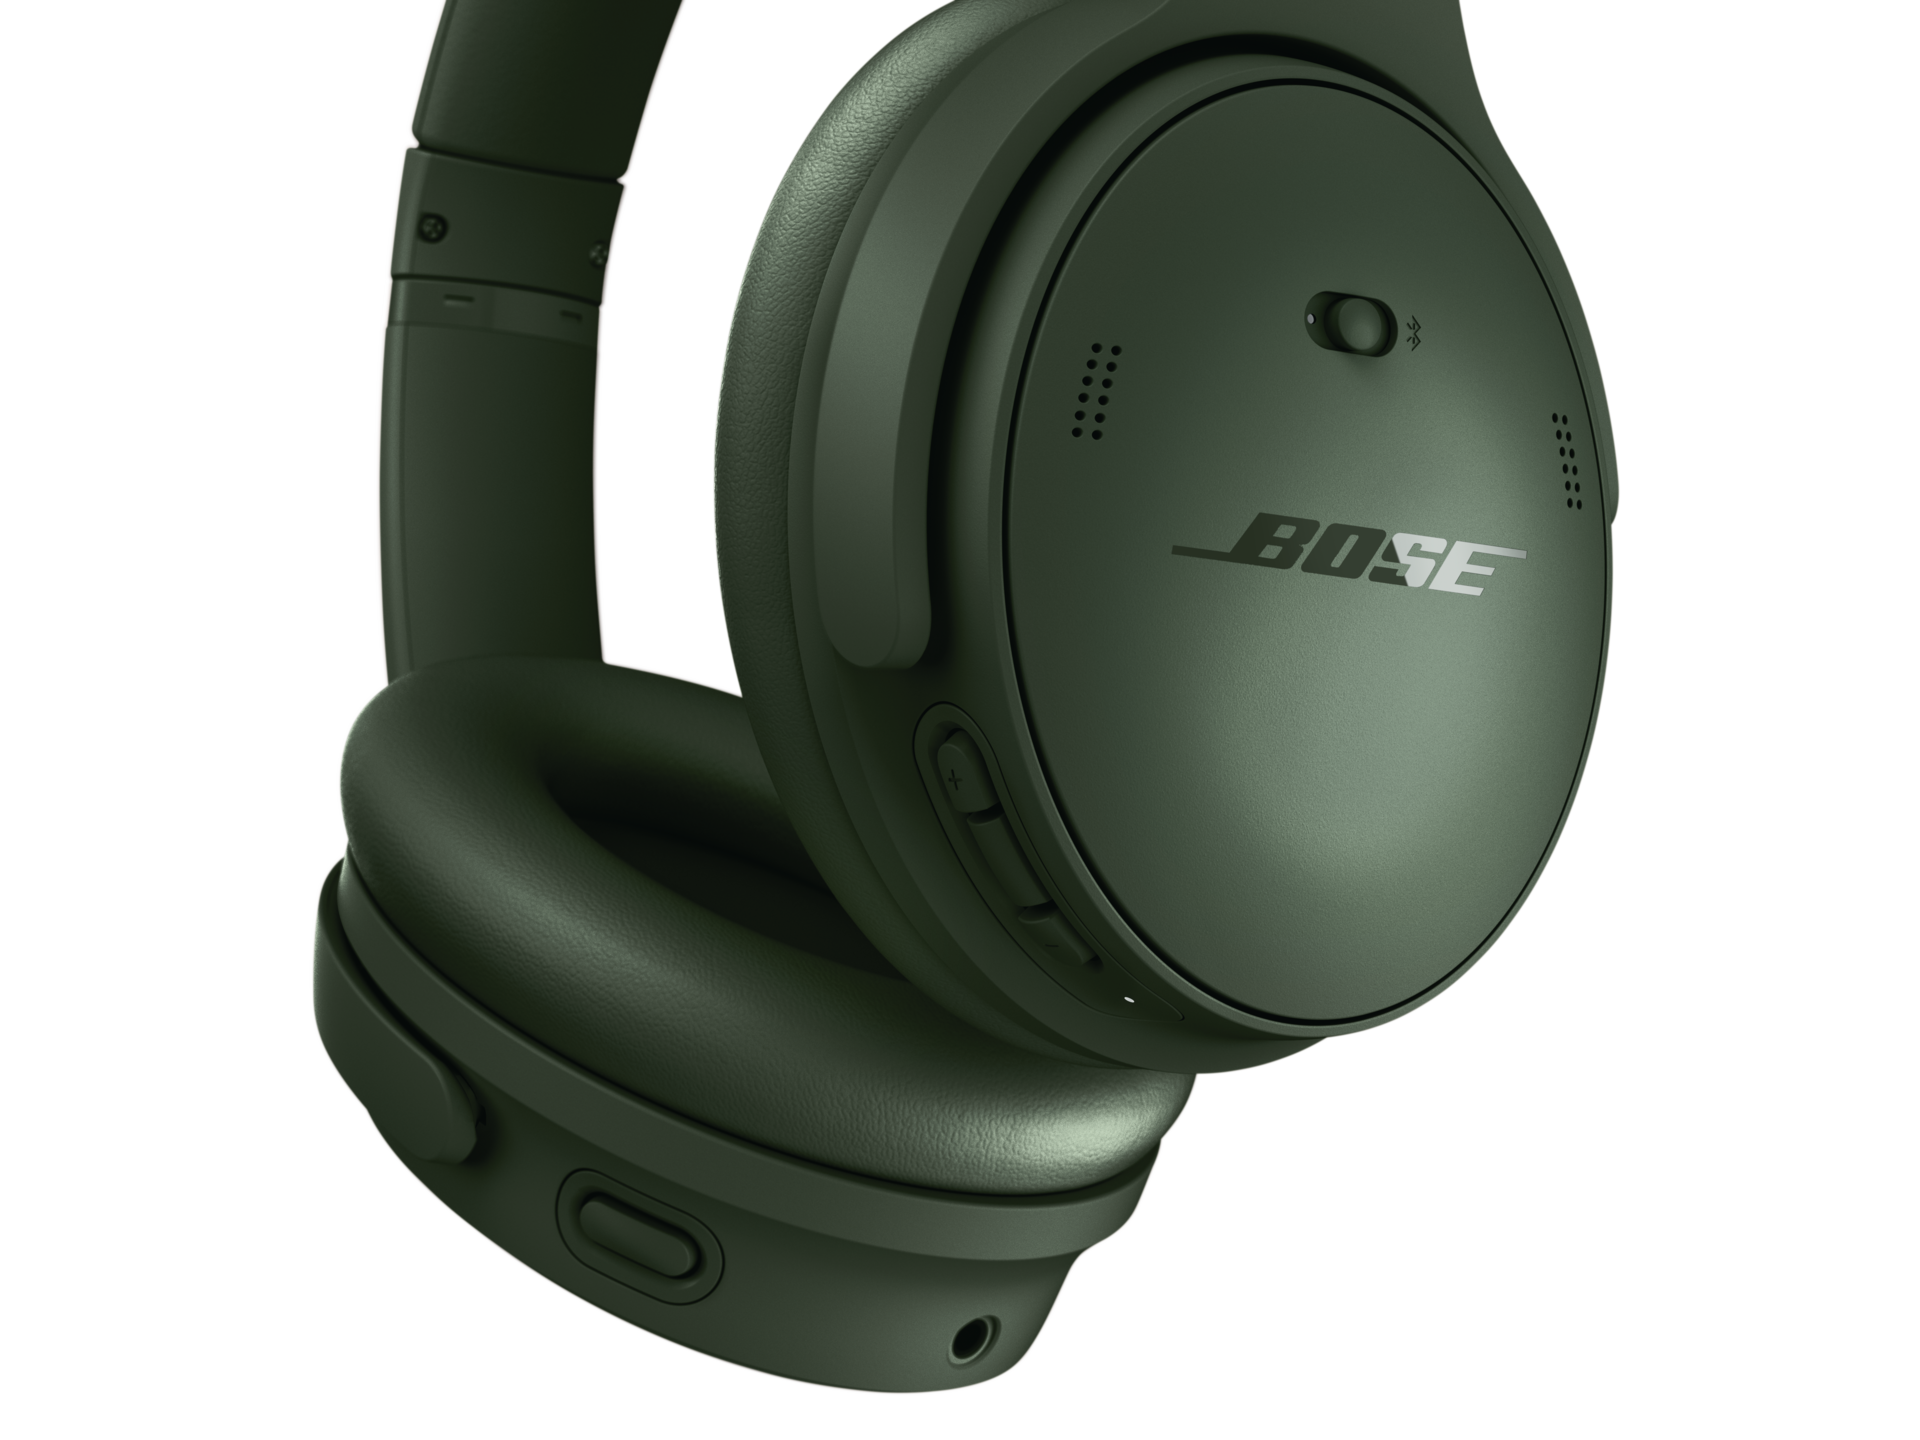 iRobust Tech Bose QuietComfort Headphones - Green